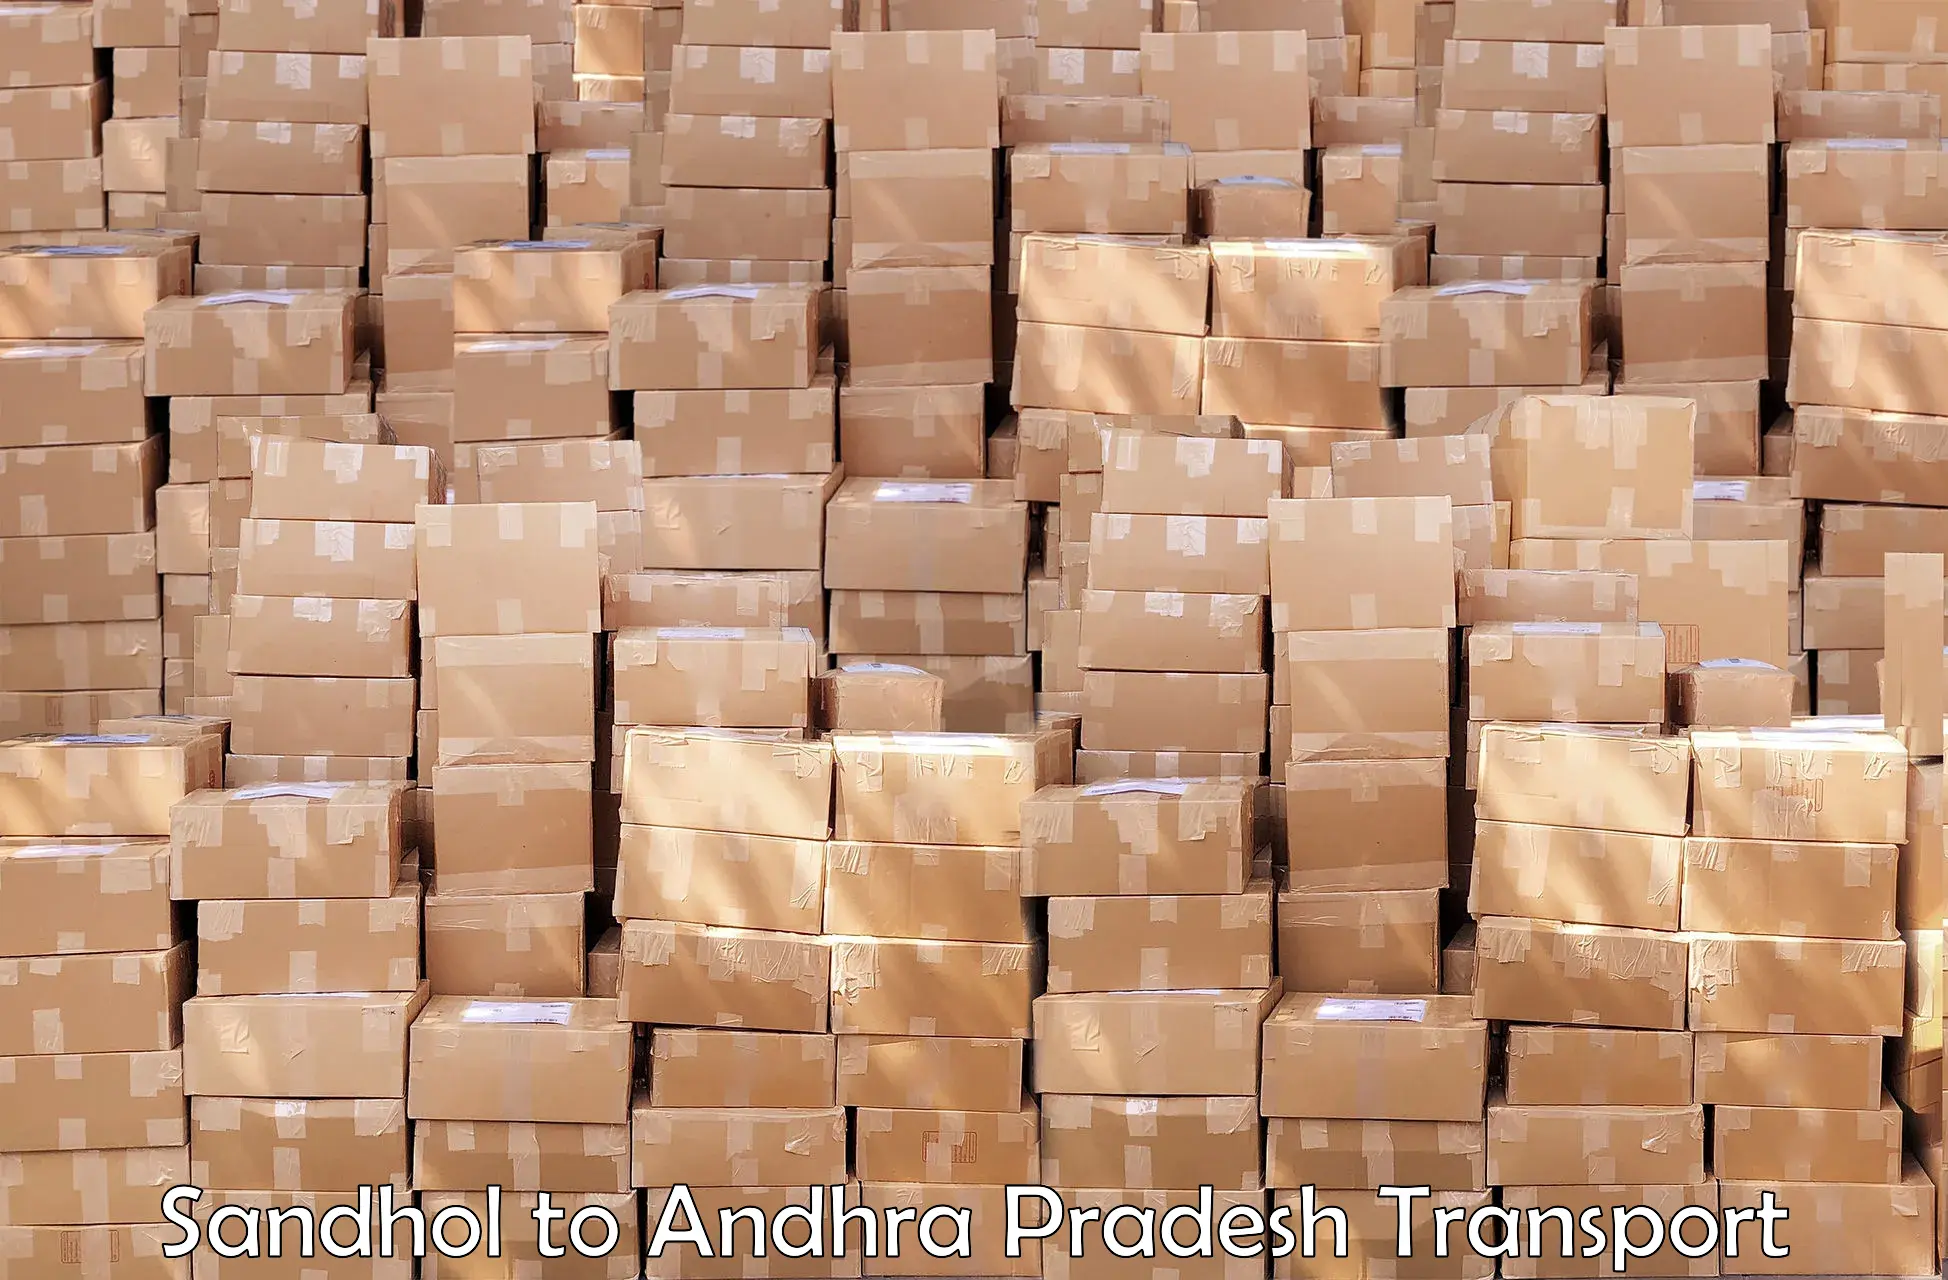 Daily parcel service transport Sandhol to Vempalli